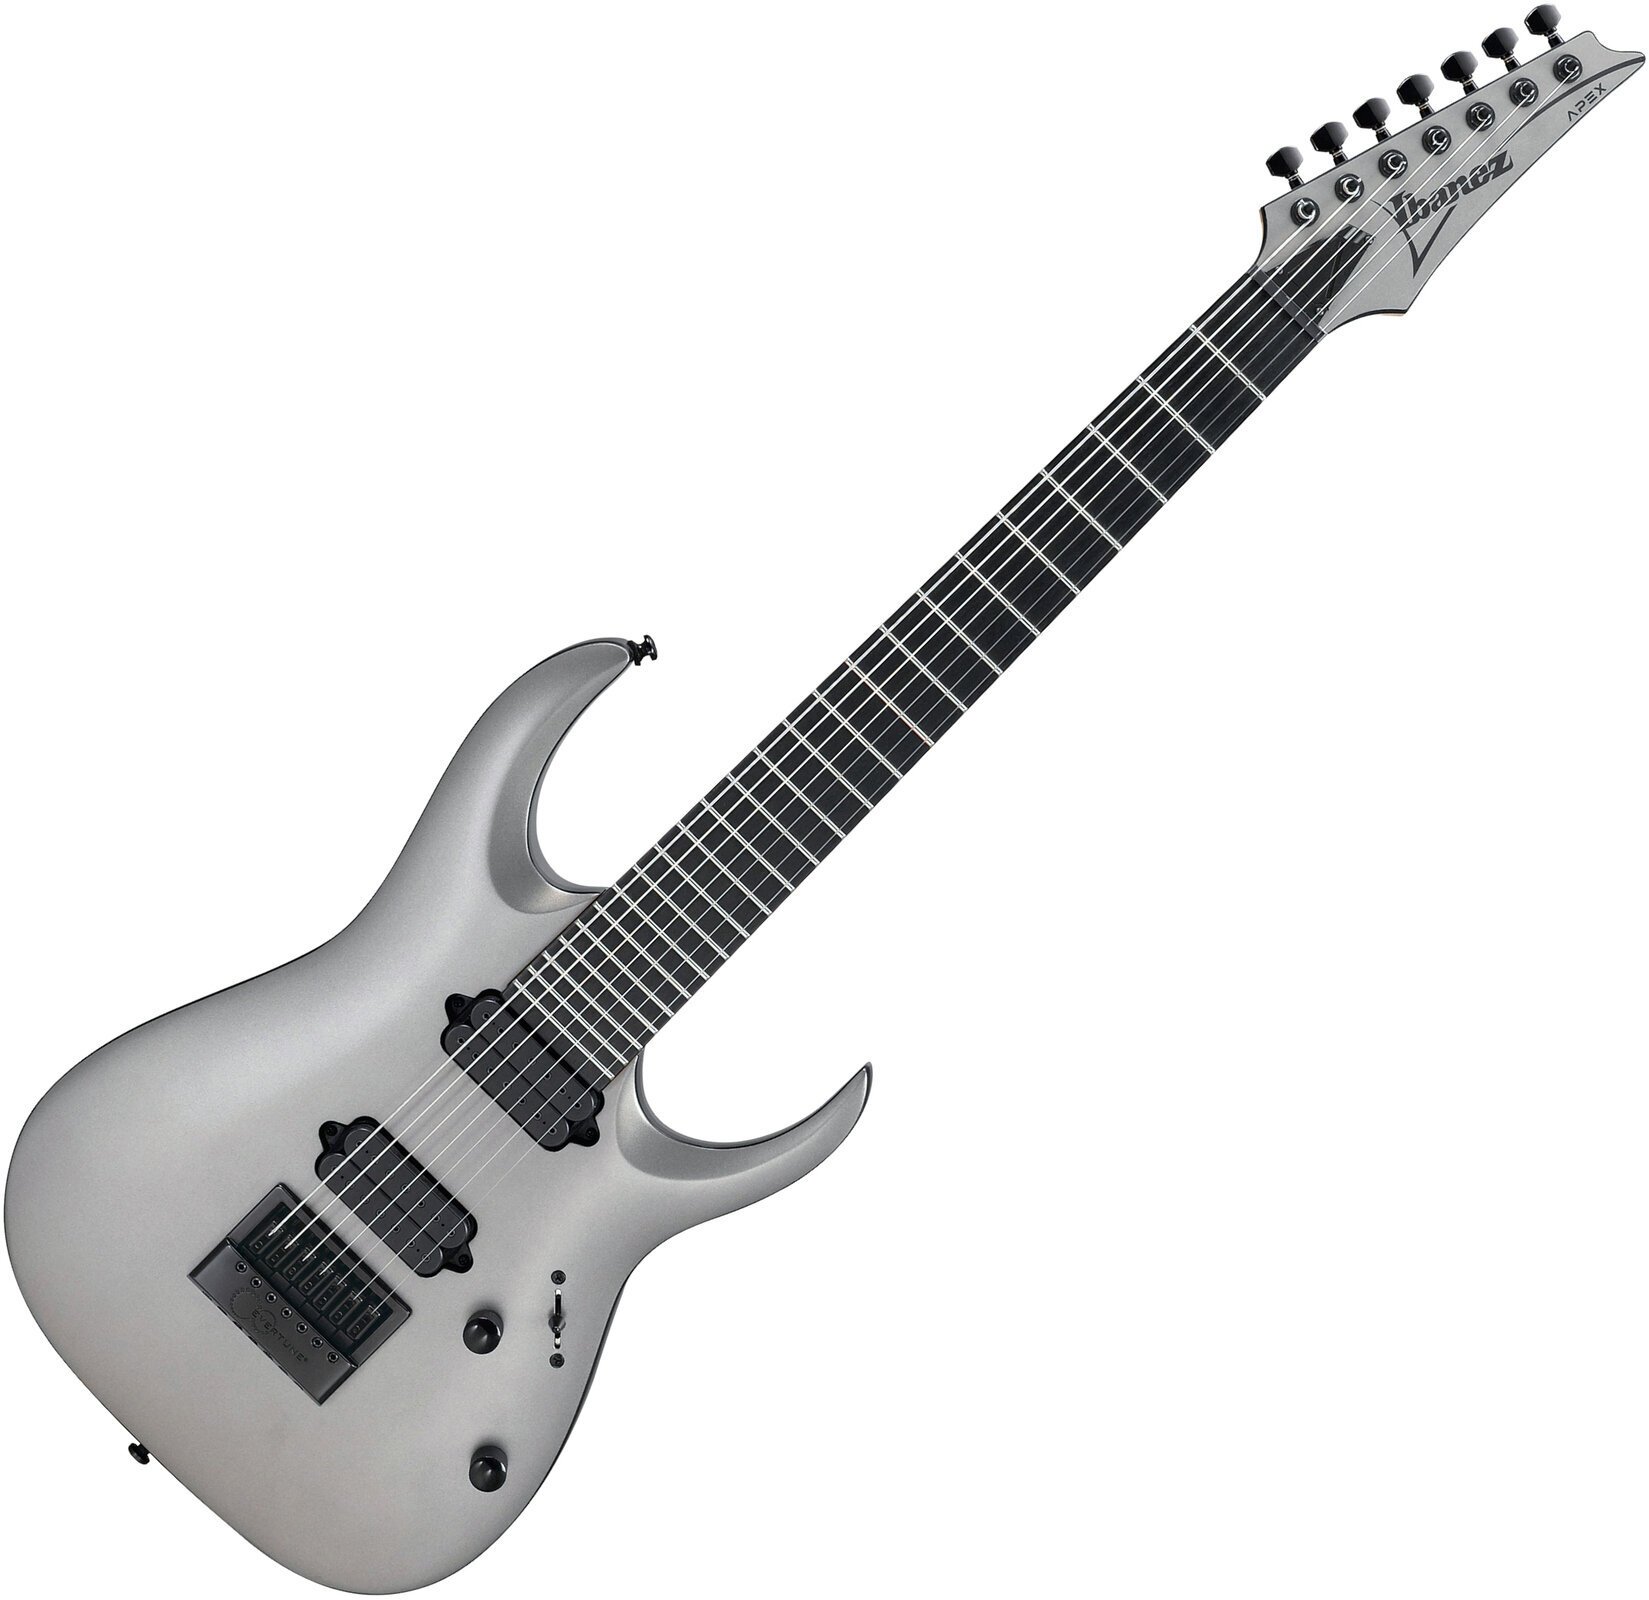 E-Gitarre Ibanez APEX30-MGM Gray Metallic Matte